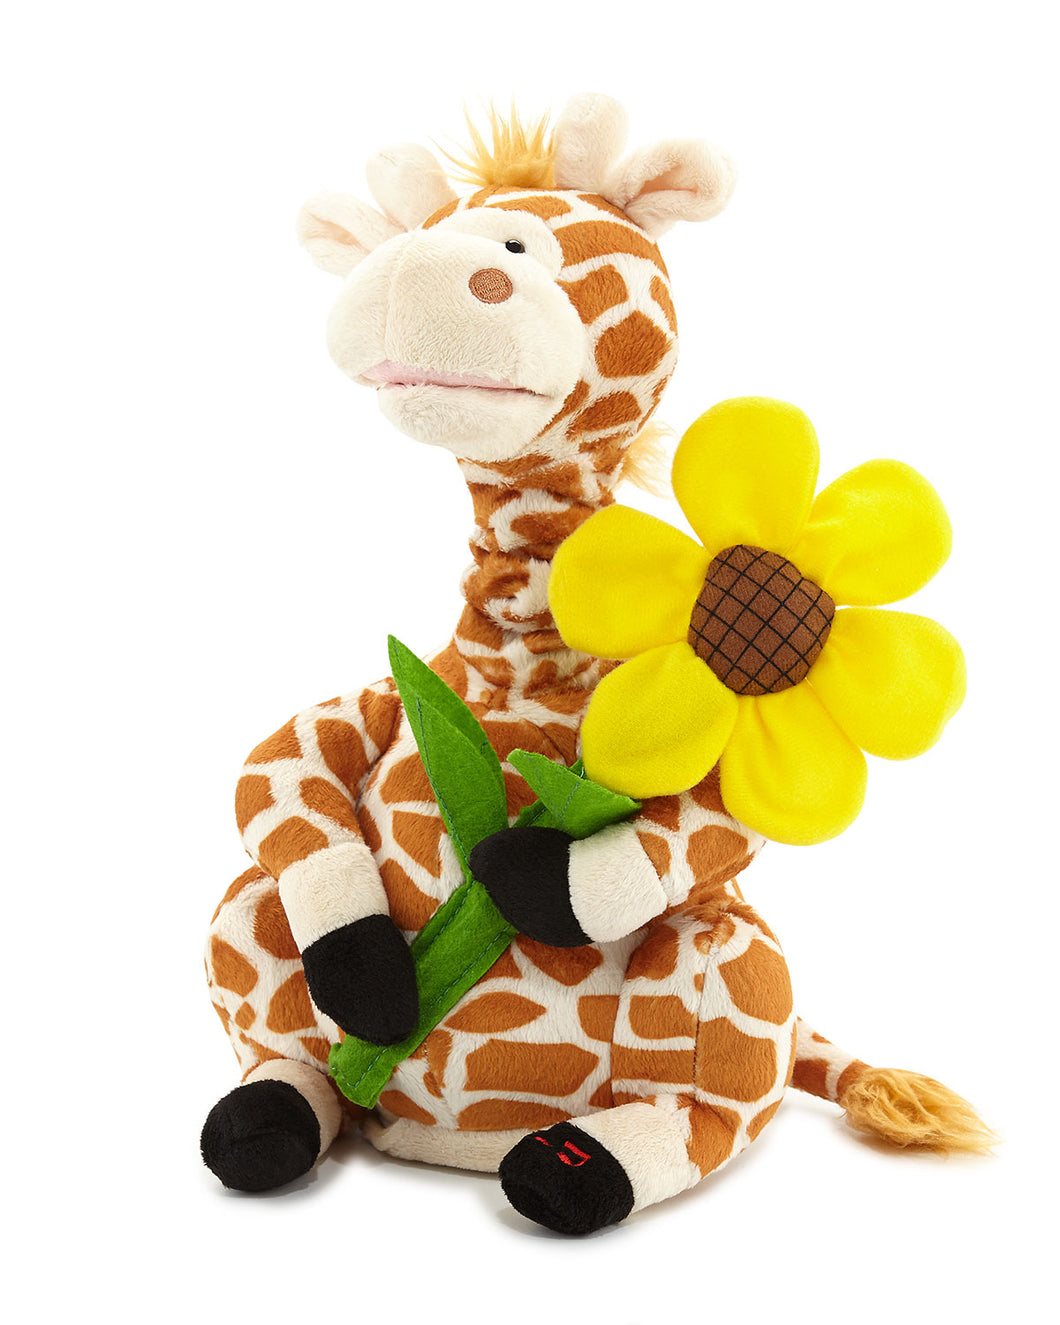 Gerry The Giraffe